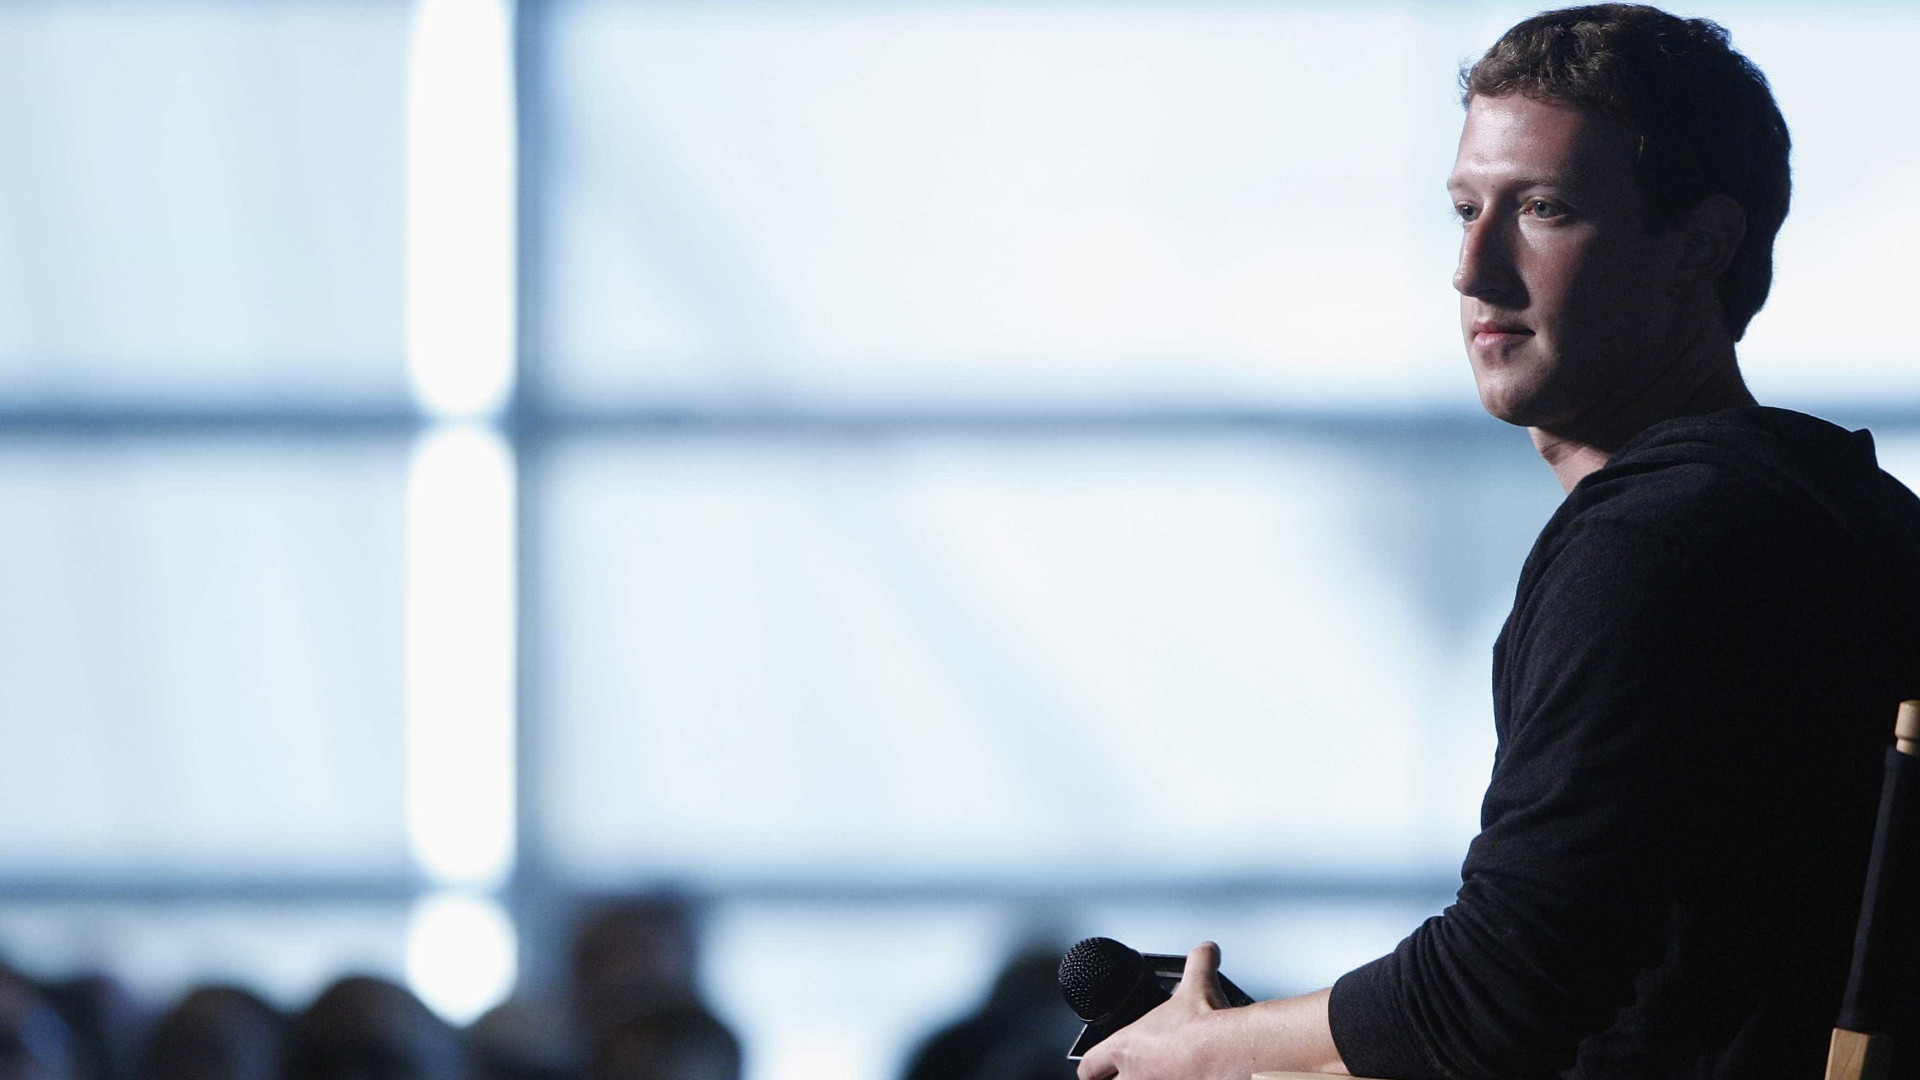 Facebook admite ‘quebra de confiança’ e pede desculpas na imprensa